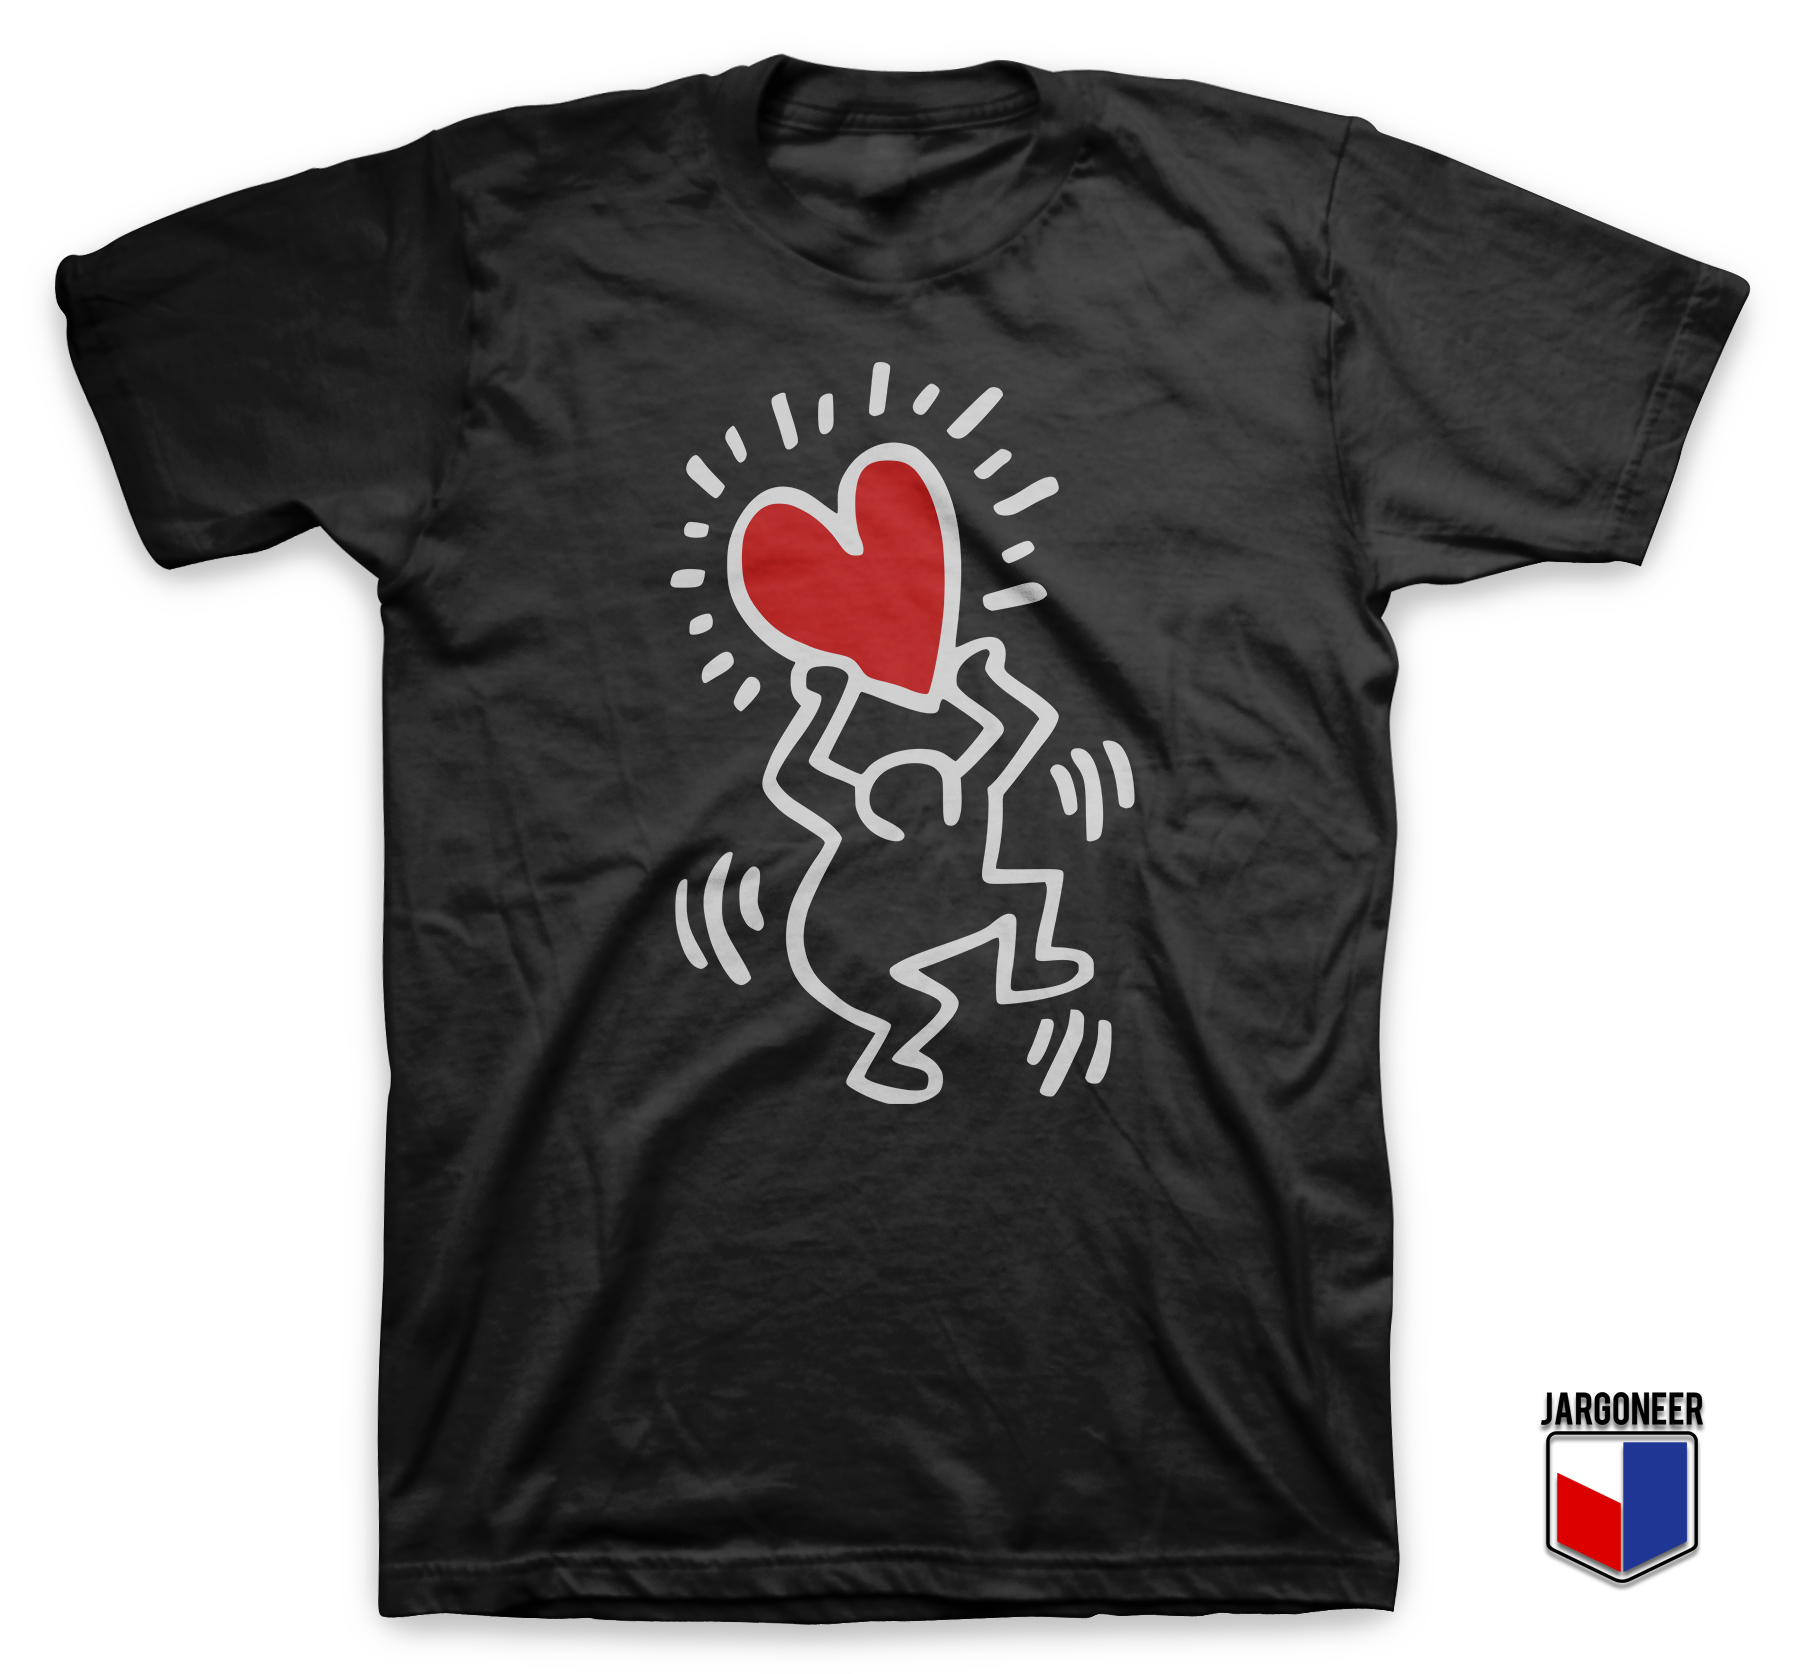 Haring Heart Black T Shirt - Shop Unique Graphic Cool Shirt Designs